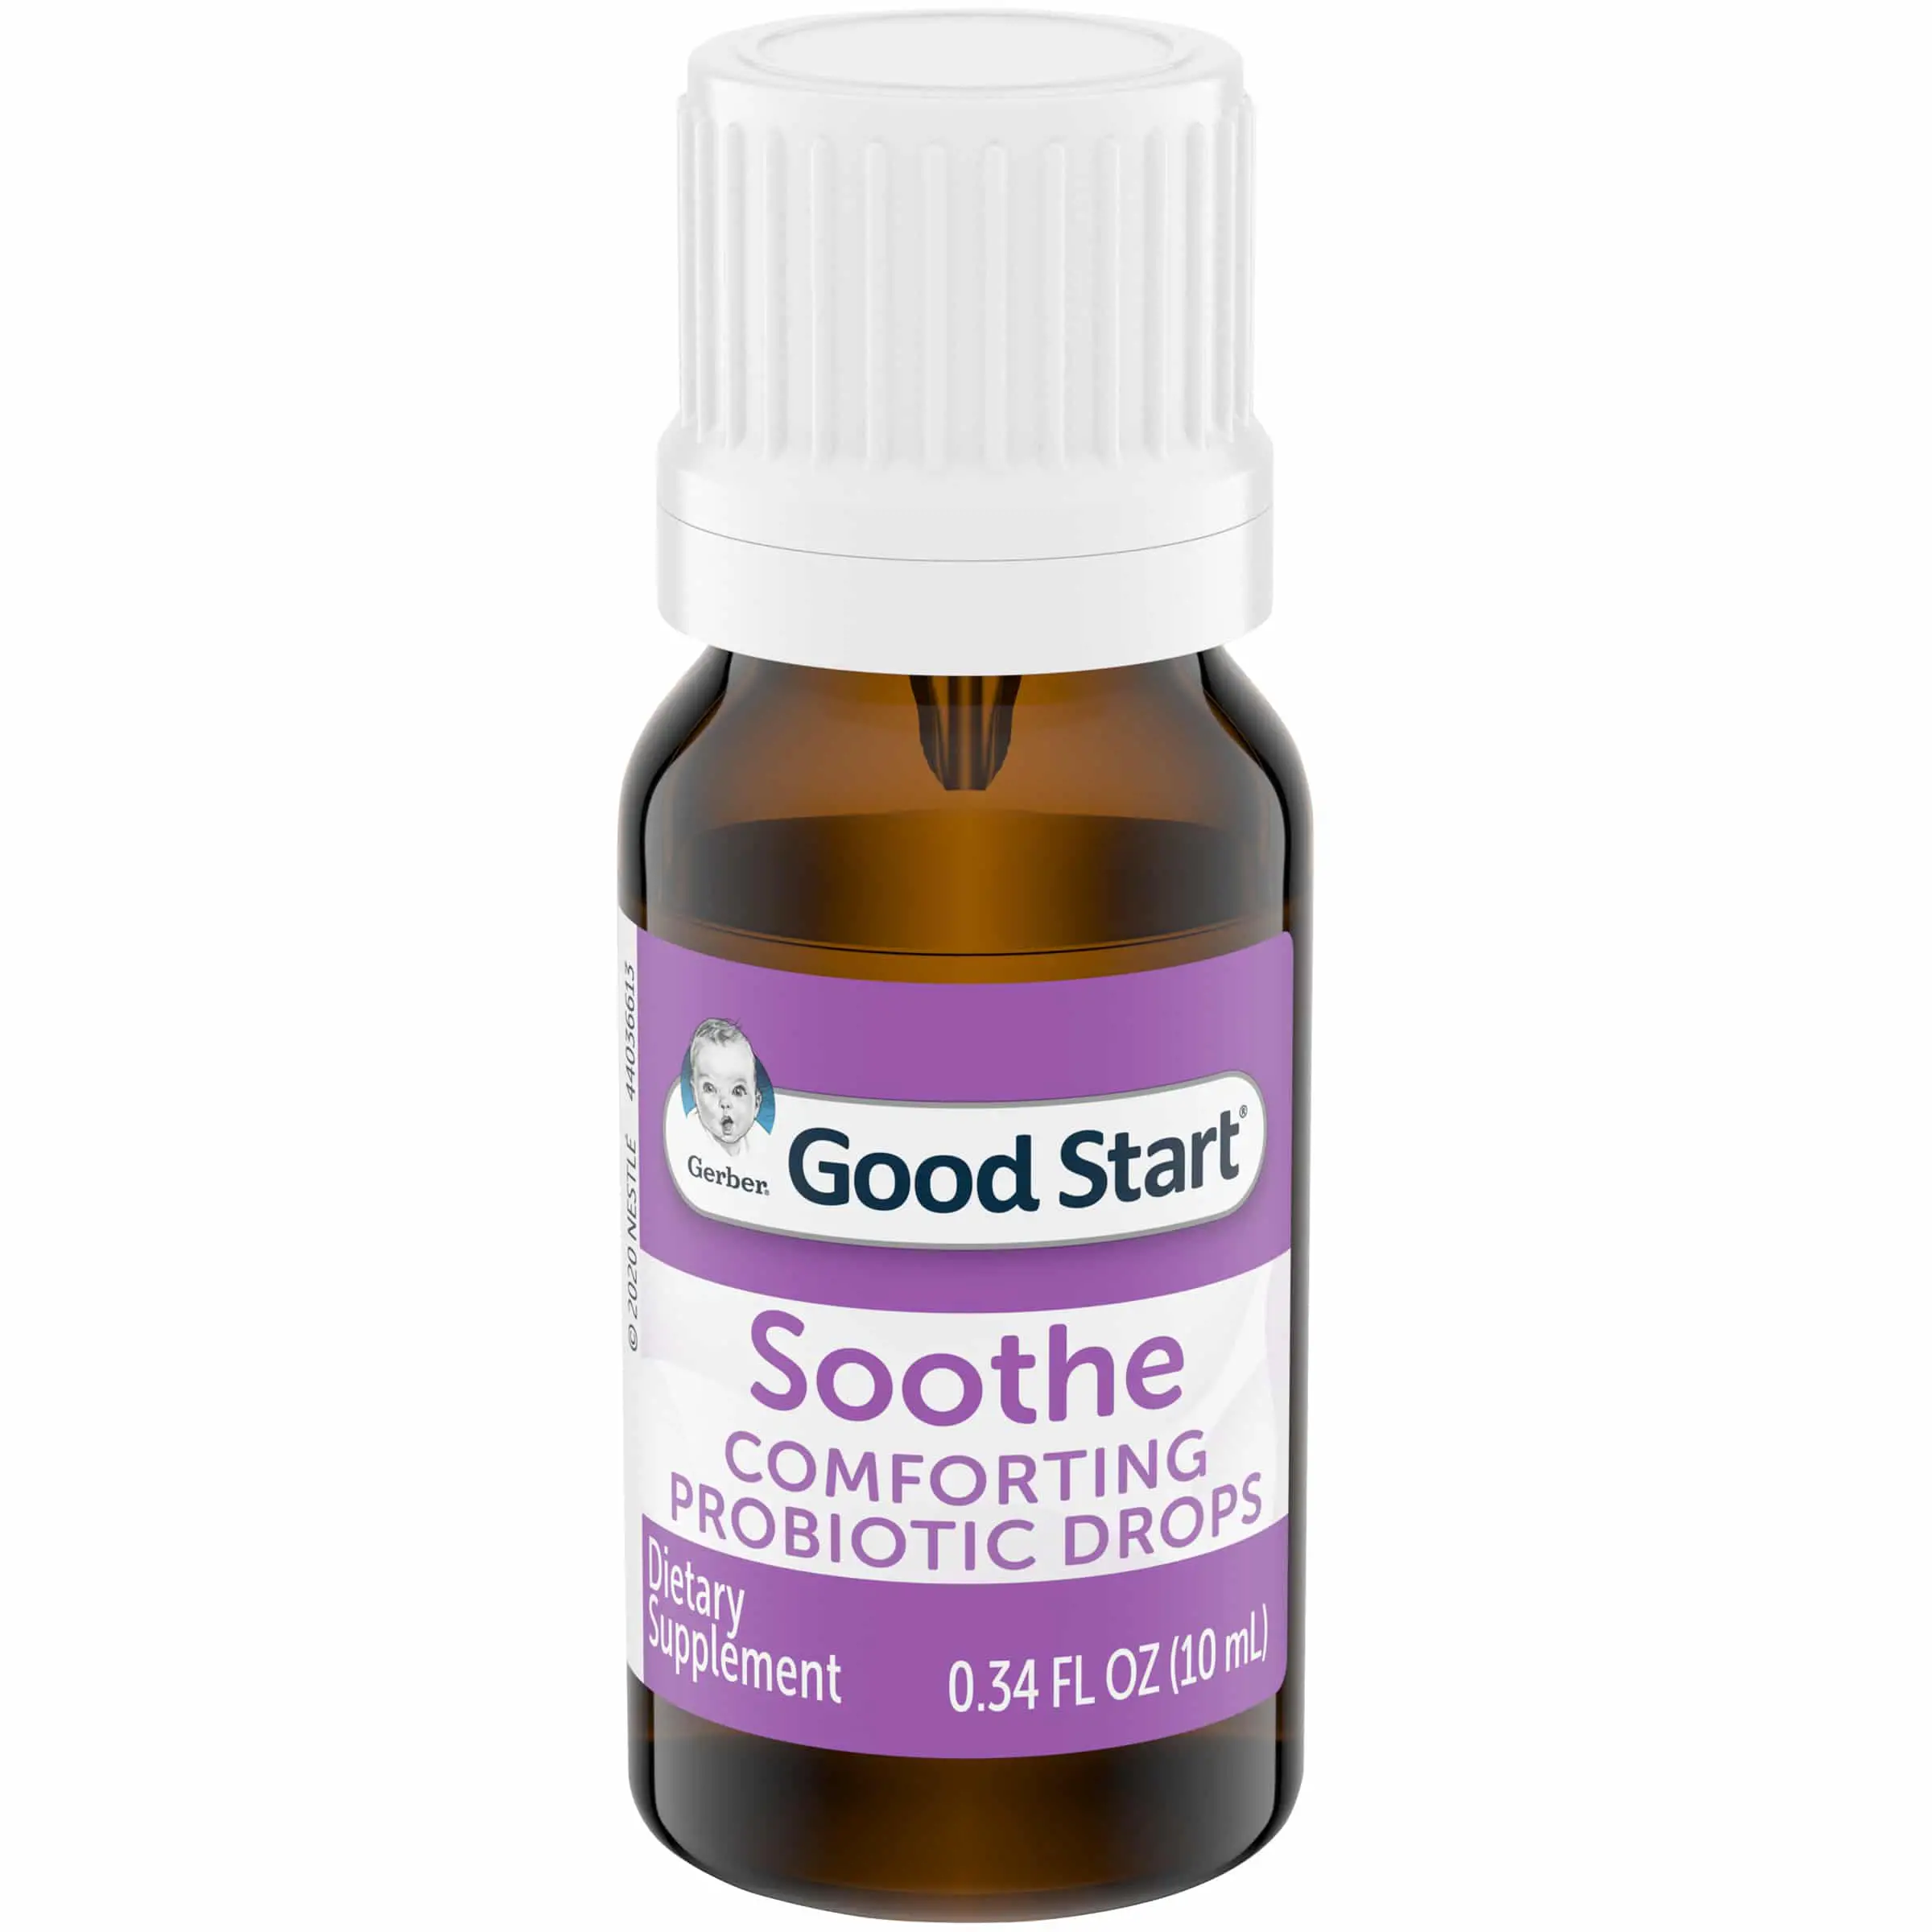 Gerber Good Start Soothe Comforting Probiotic Drops Dietary Supplement ...